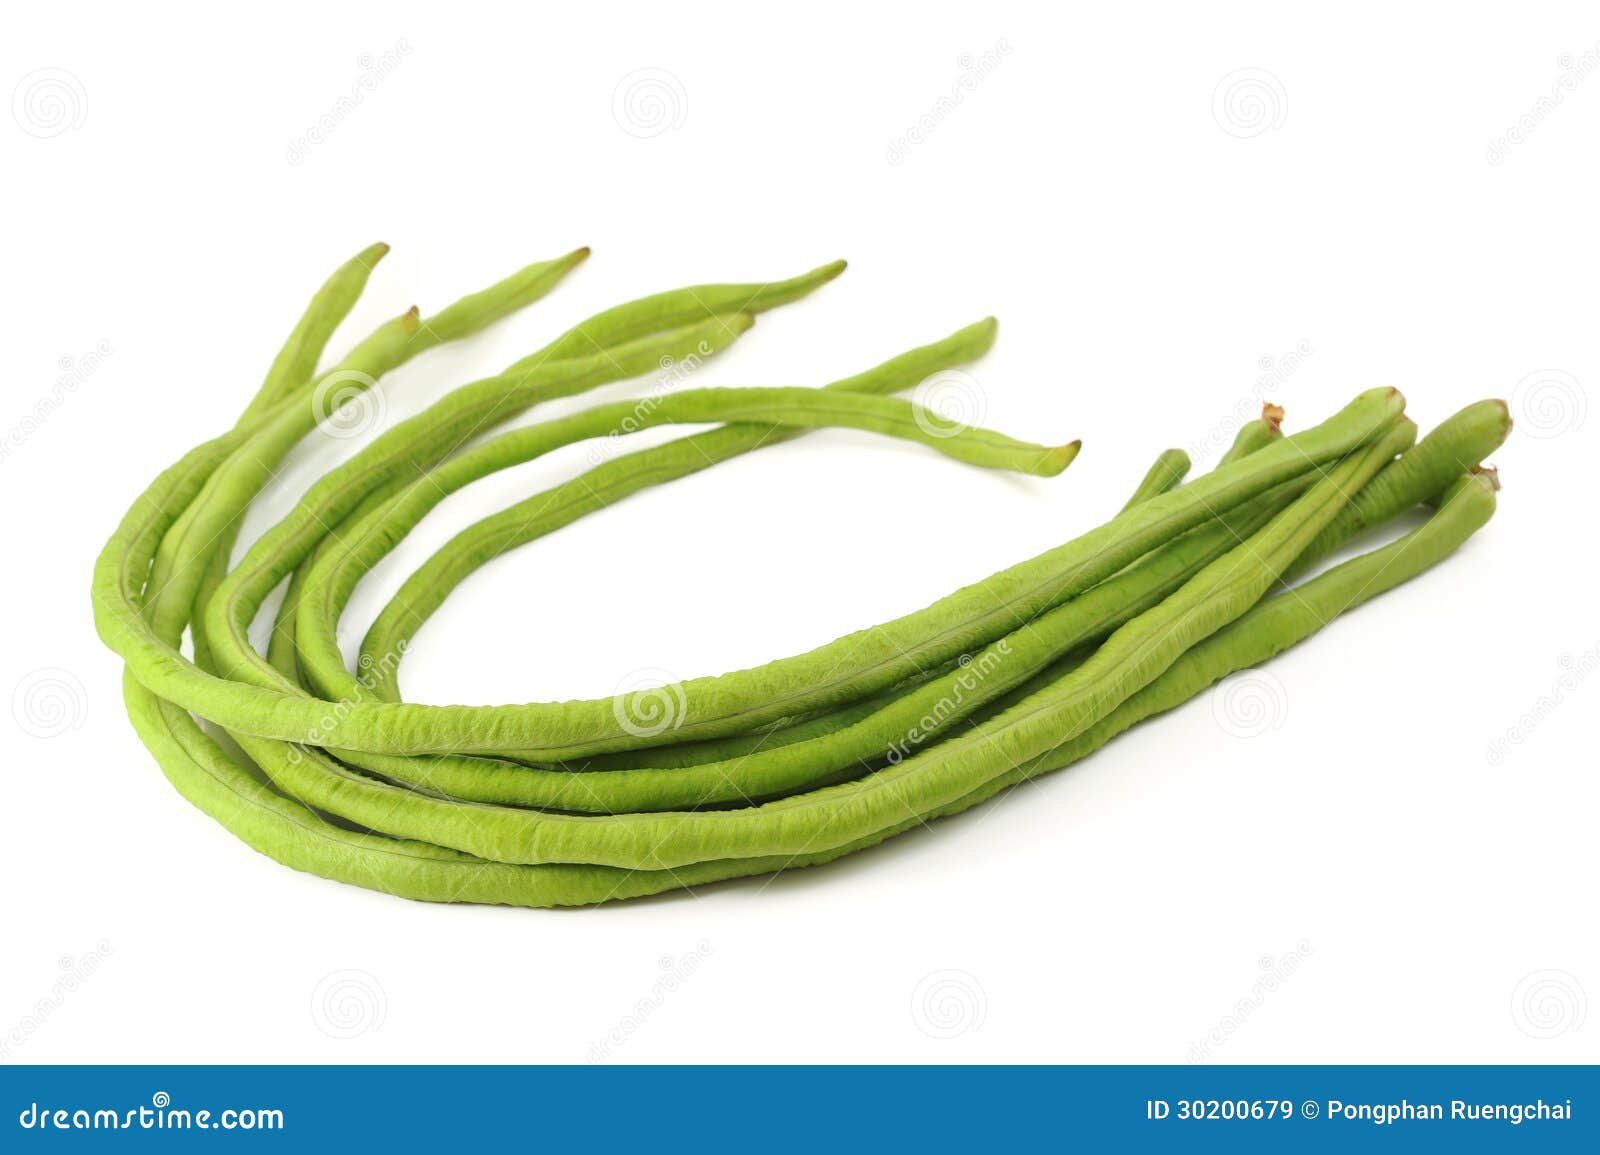 长豆或长菜蔬菜 库存图片. 图片 包括有 长期, 绿色, 蔬菜, 围场, 工厂 - 242780635